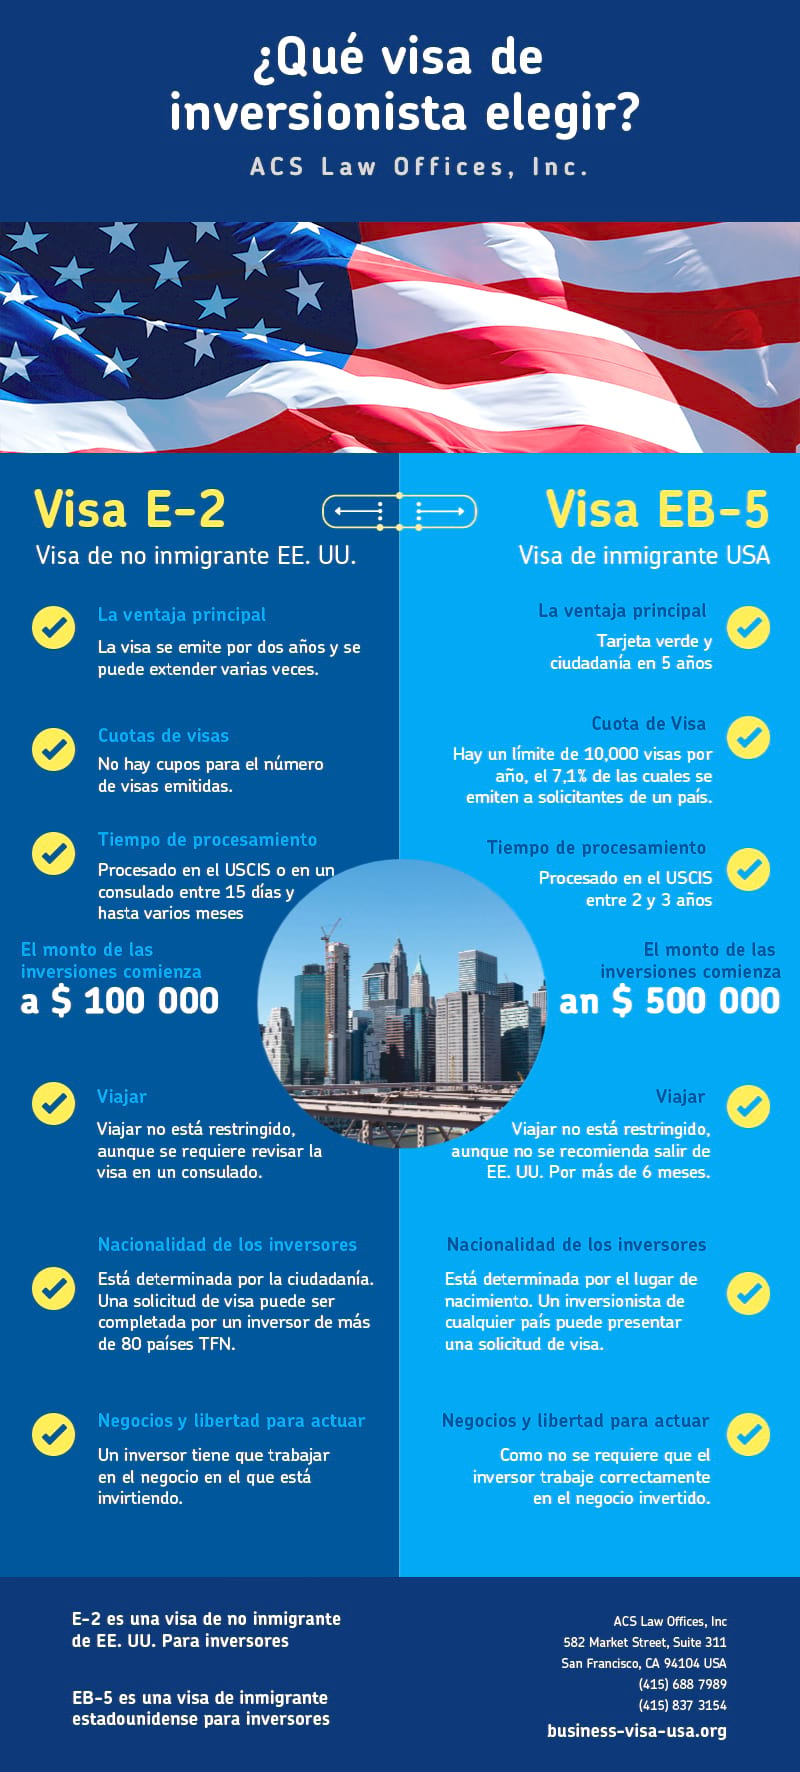 Visa E-2 